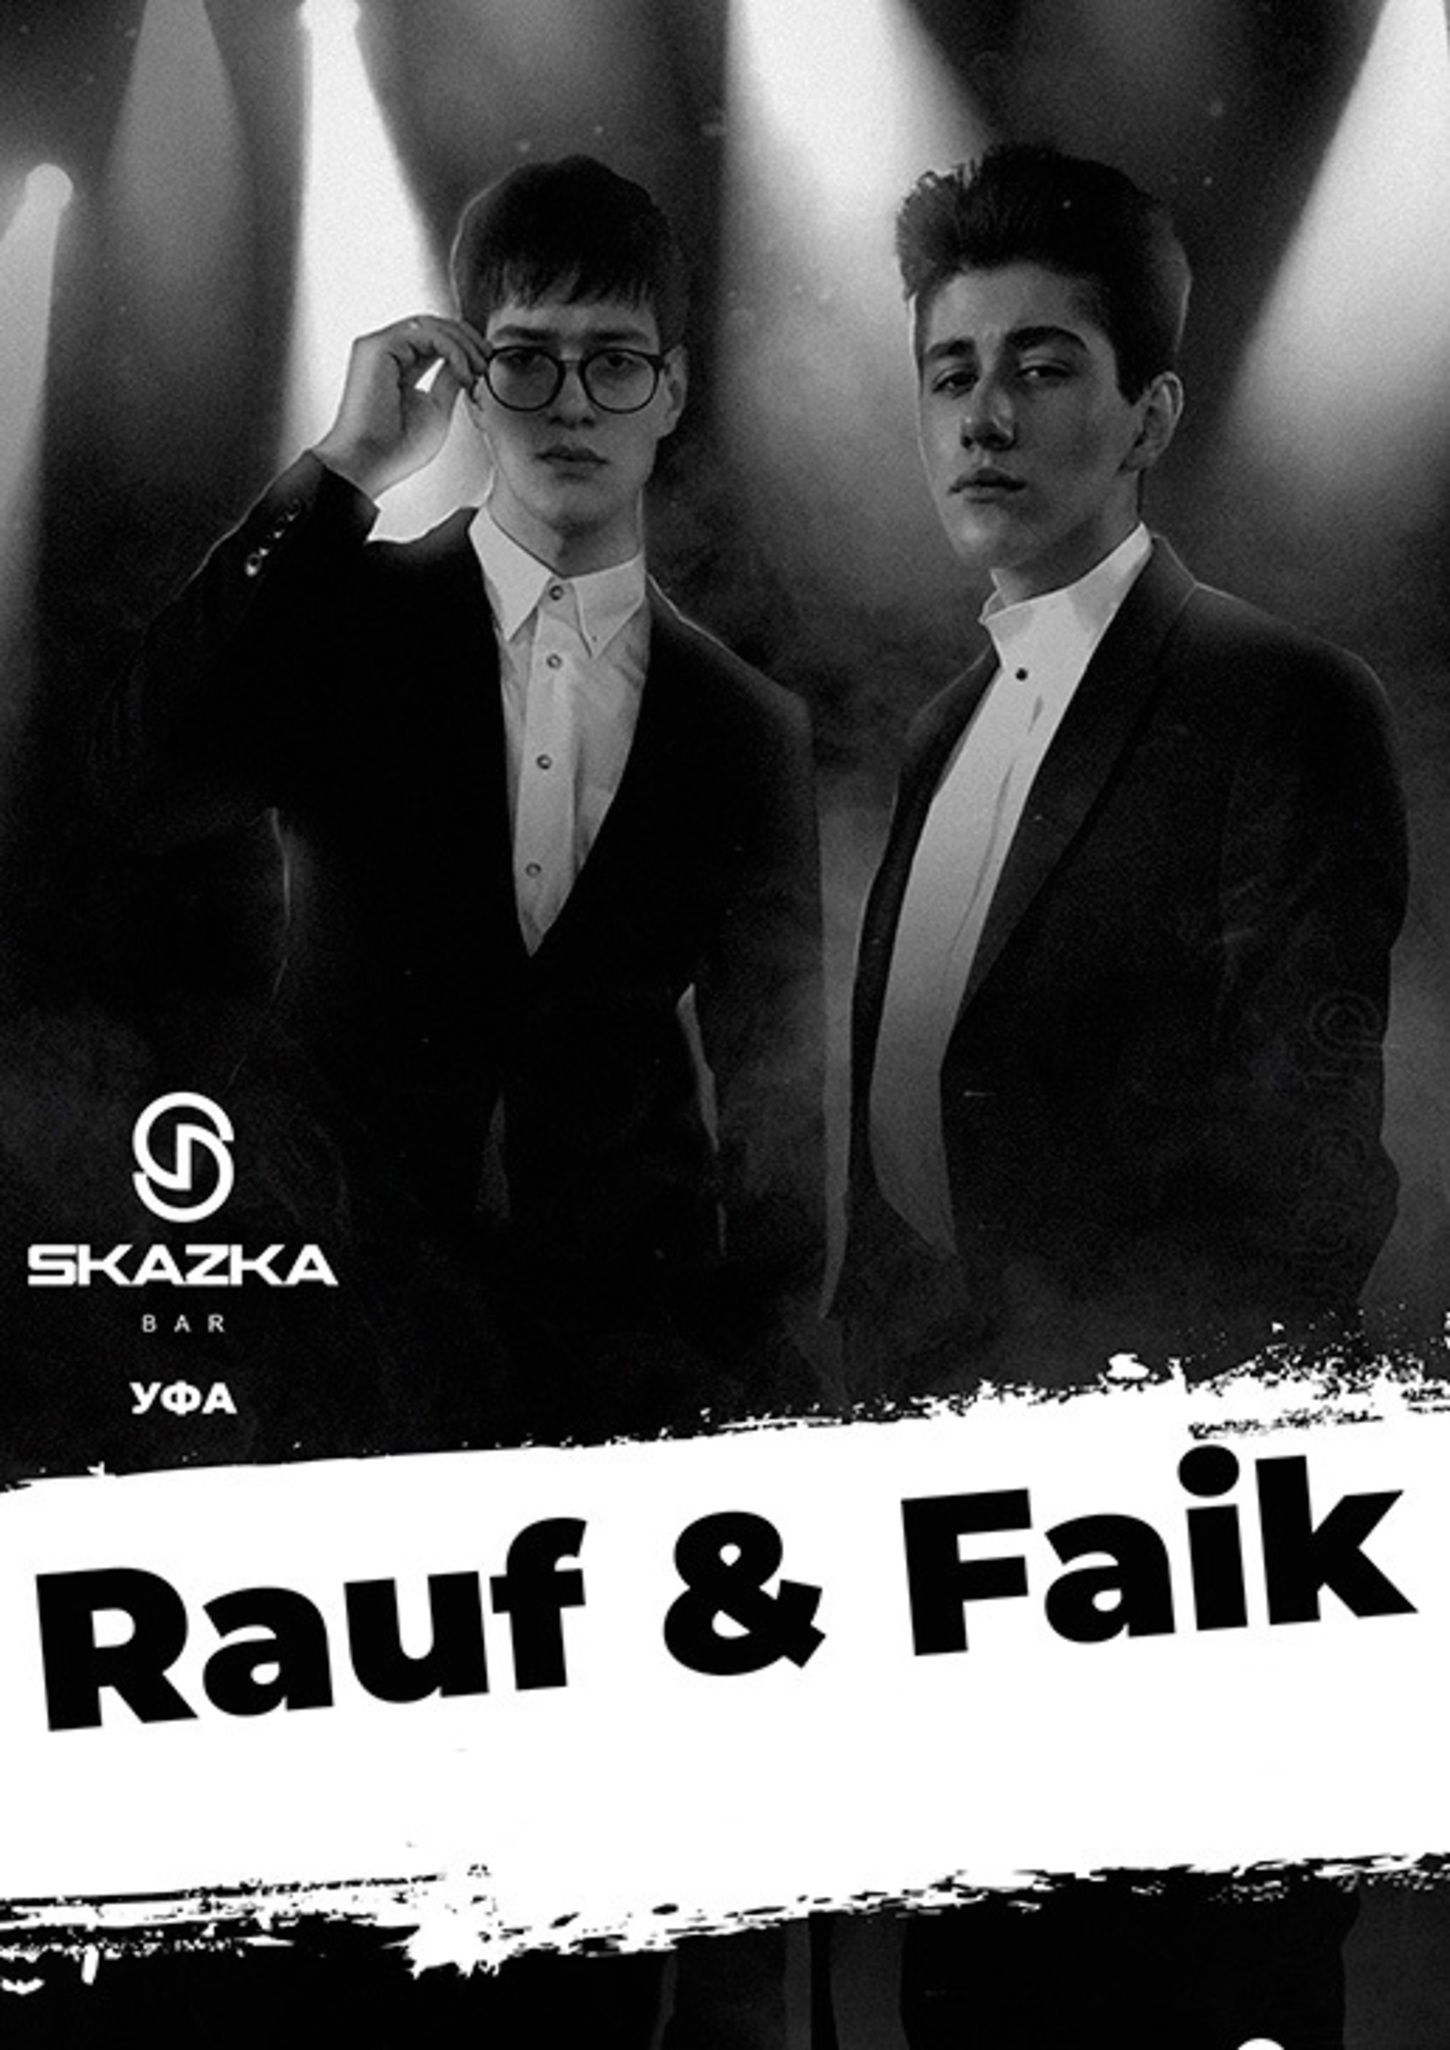 карточек в коллекции «Rauf & Faik» пользователя